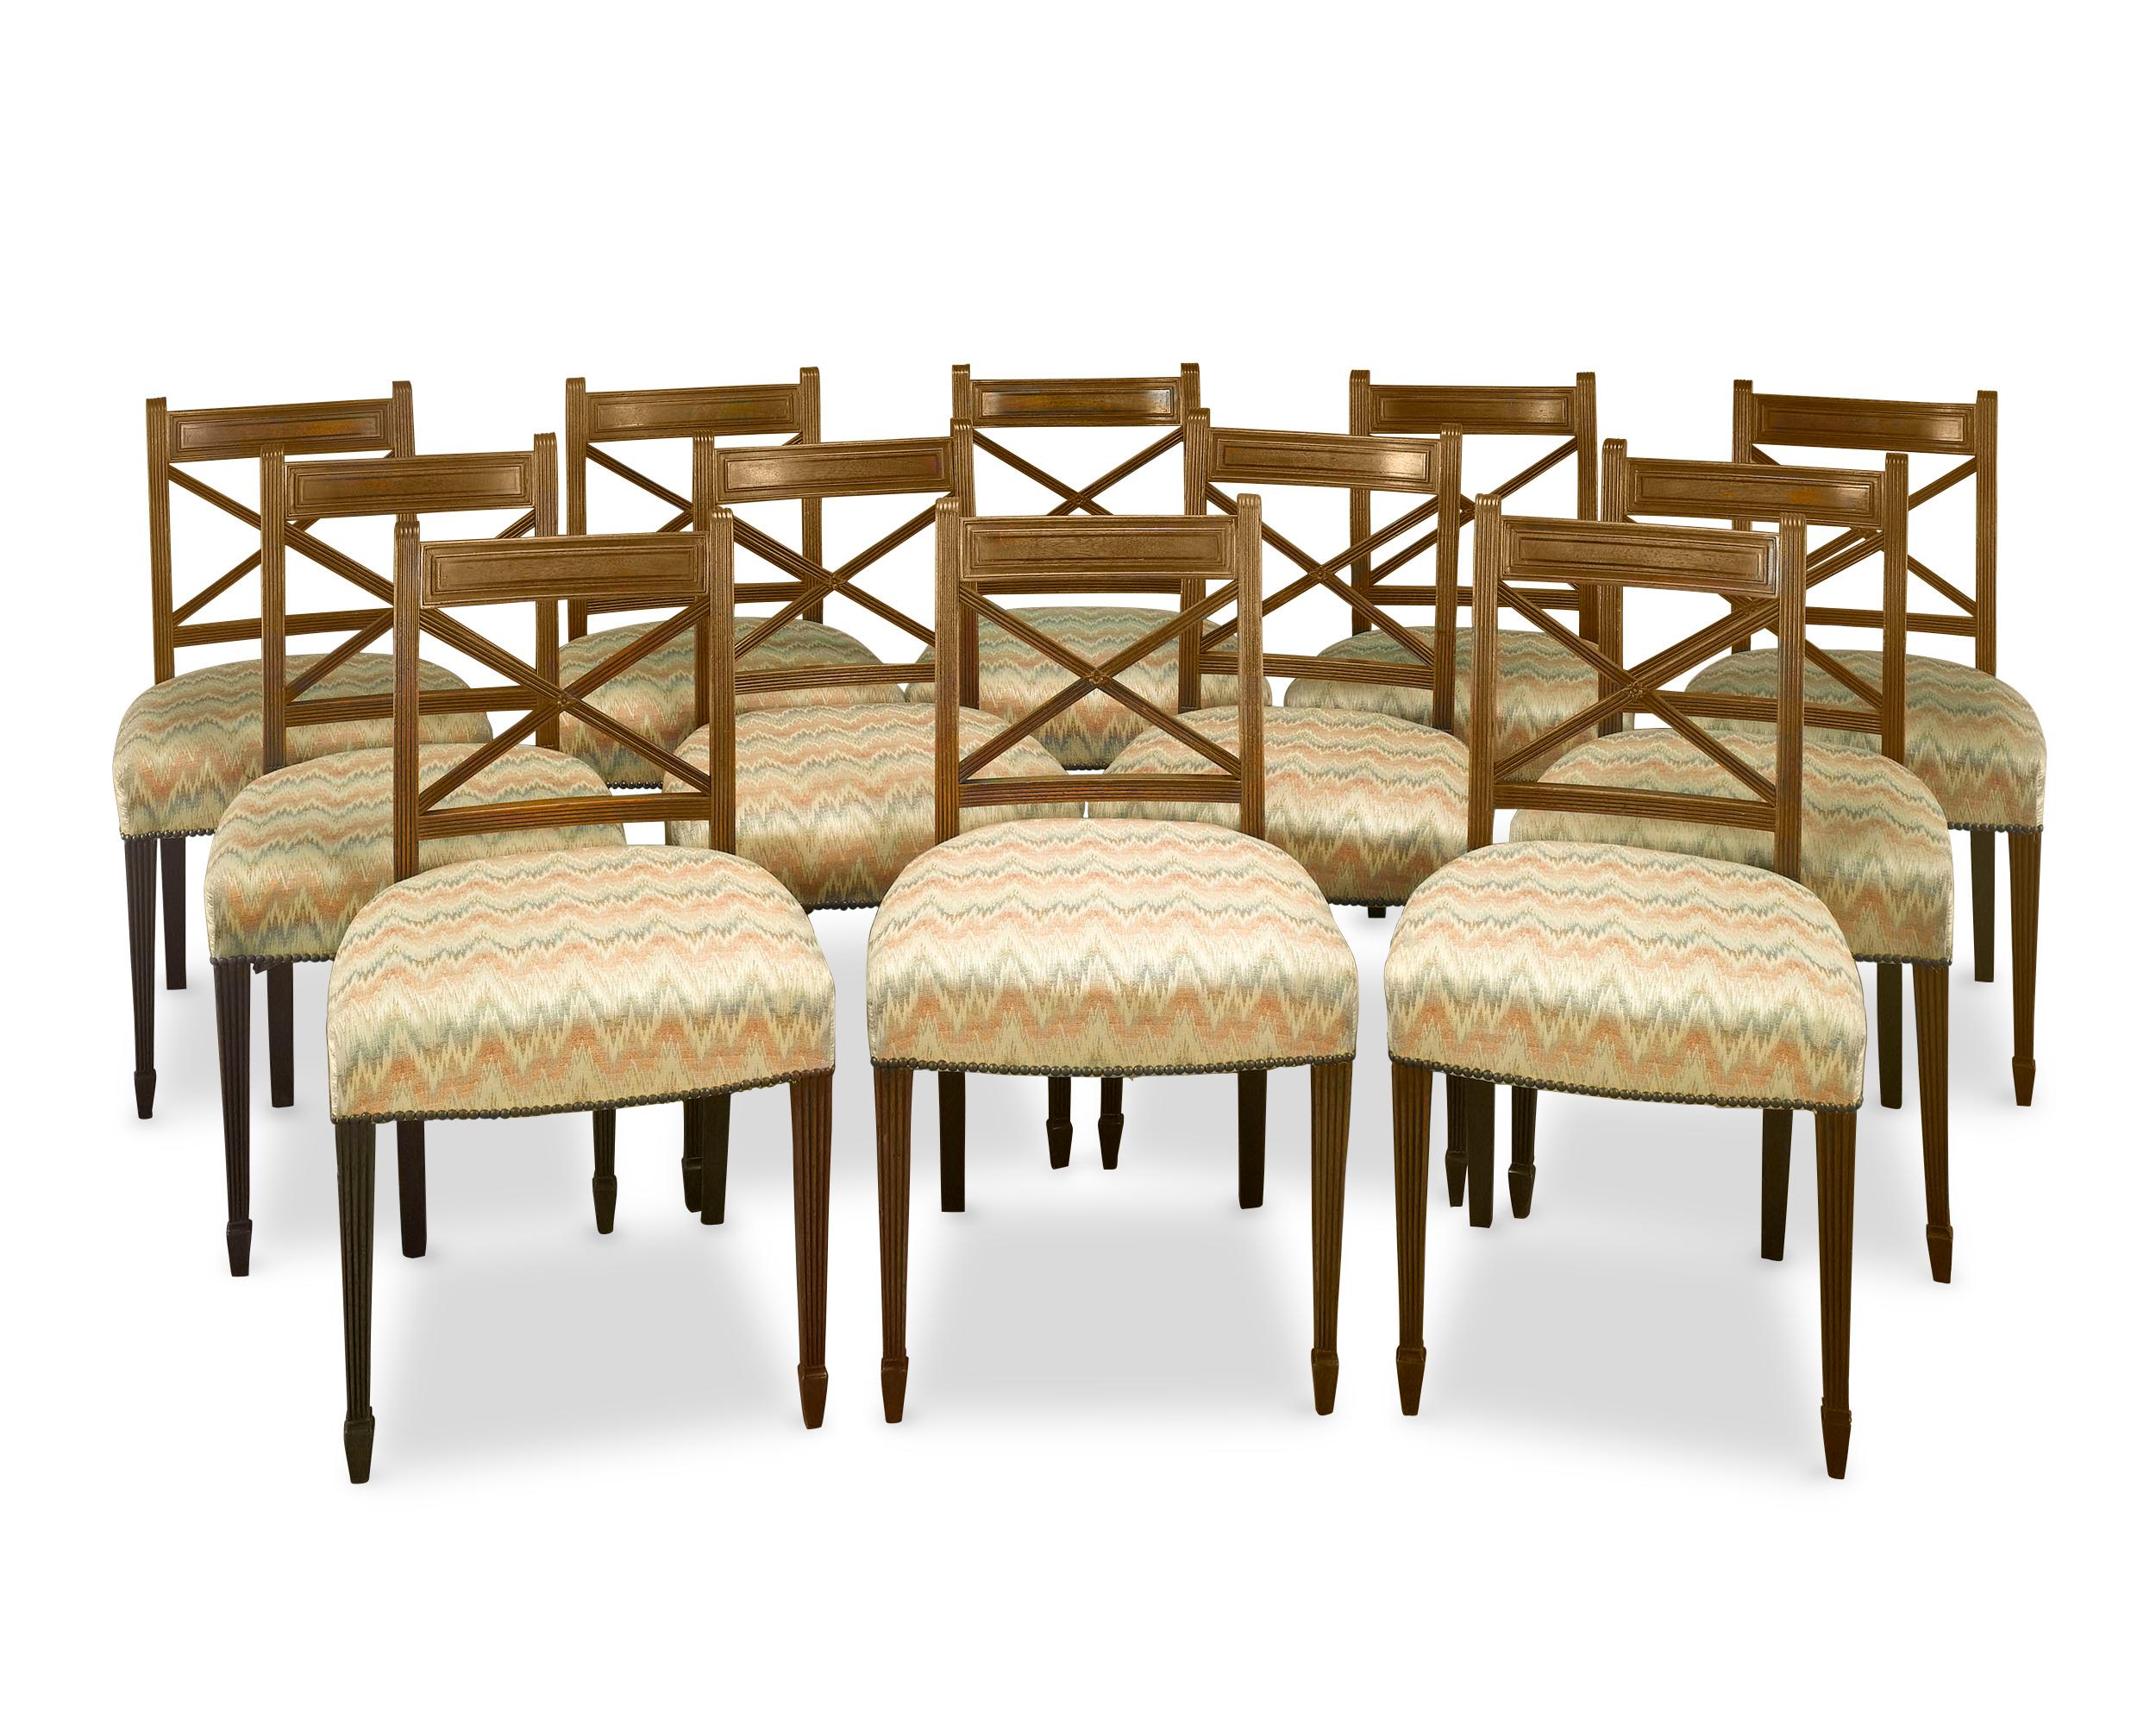 Ce bel ensemble de 12 chaises de salle à manger d'époque Régence est un exemple exceptionnel de mobilier Régence, tant par sa construction que par son design. Les chaises sont fabriquées en acajou riche et se distinguent par des dossiers à rubans